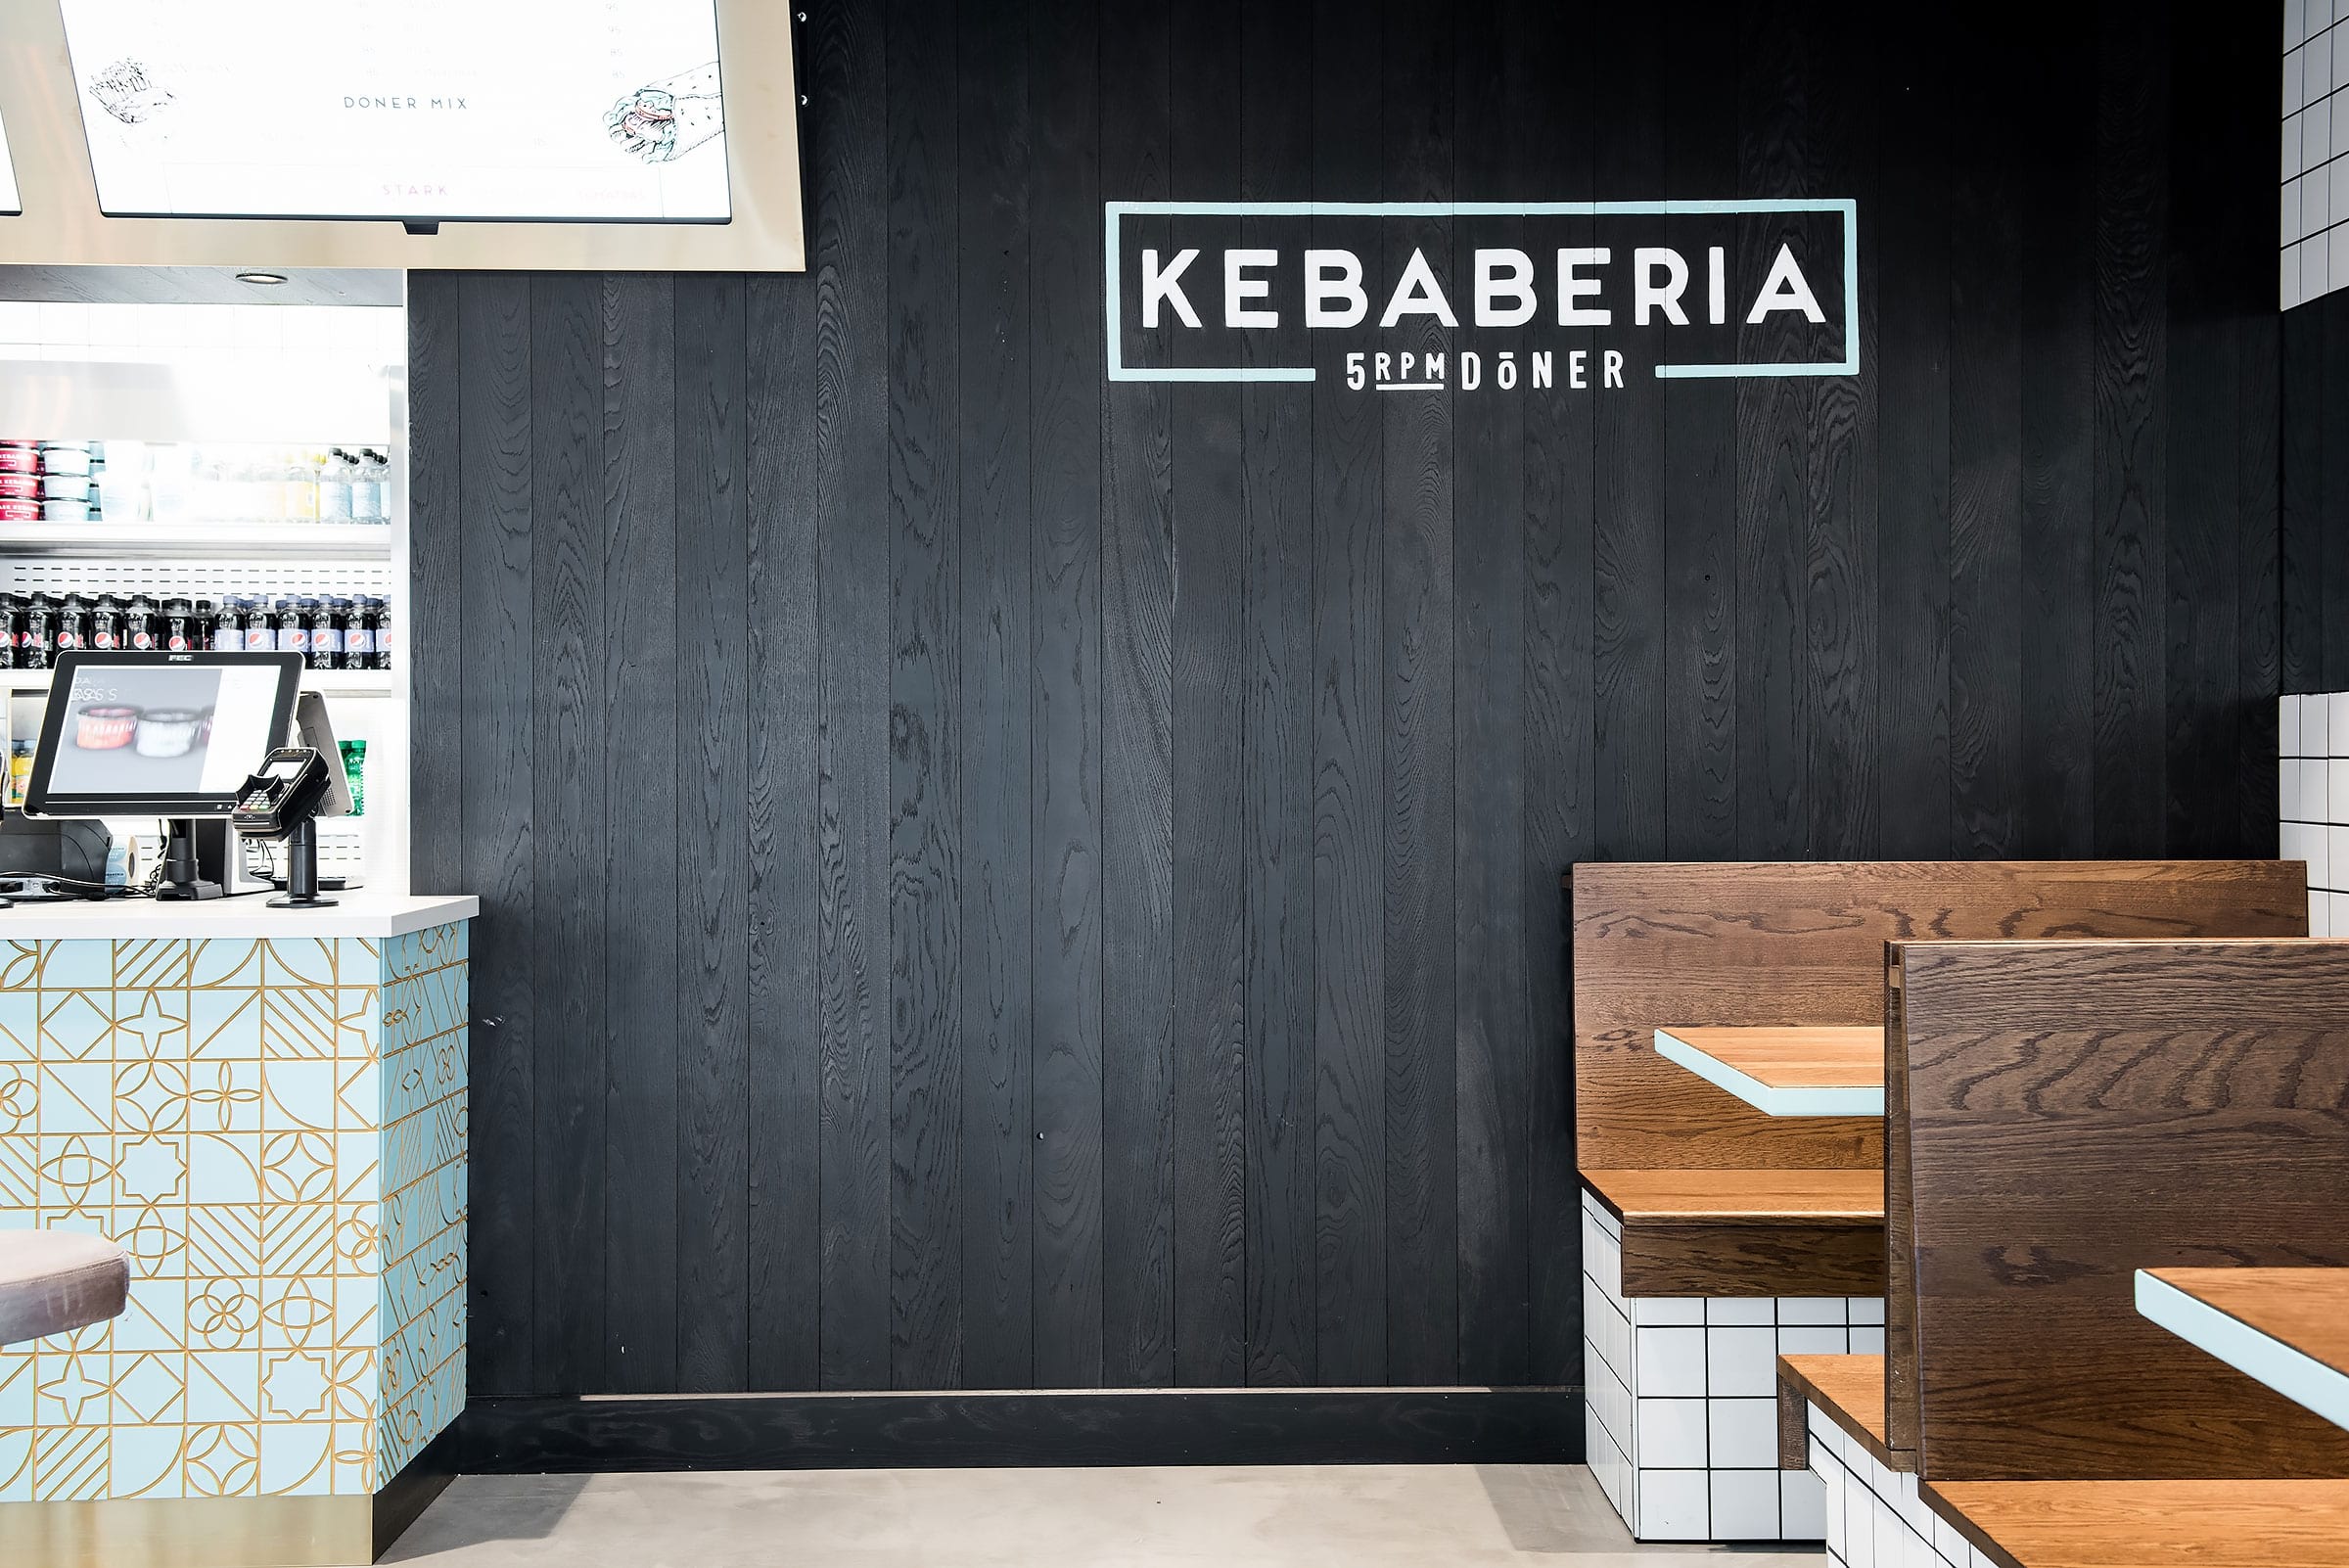 Kebaberia kör tight koncept från grunden